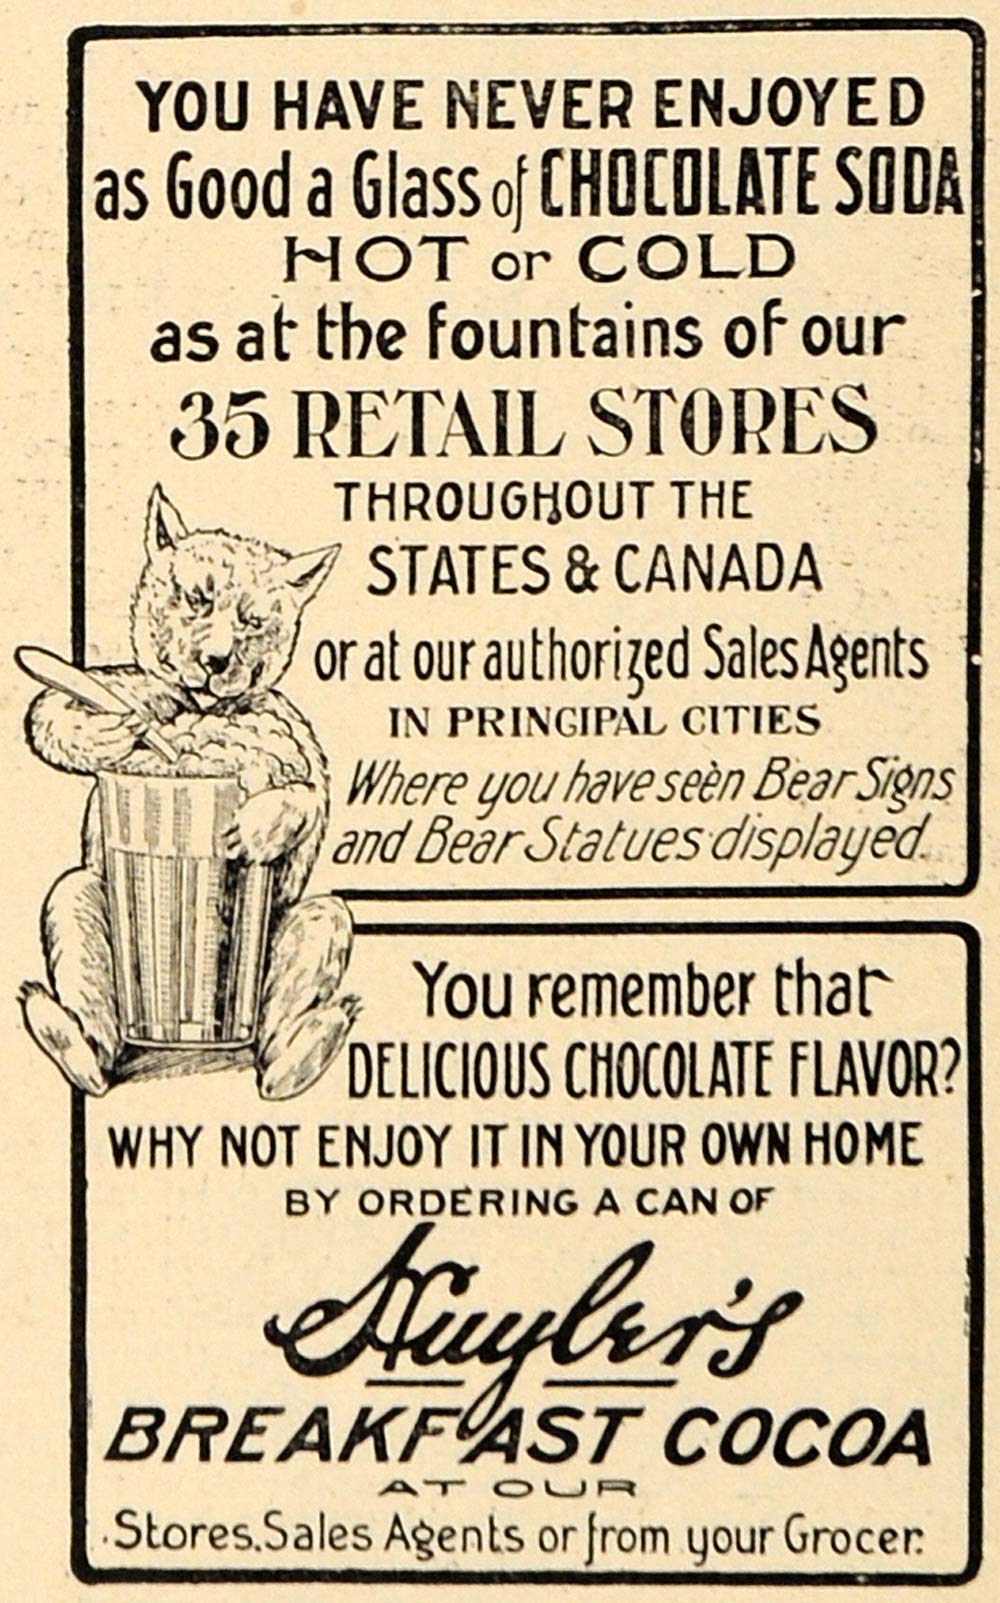 1907 Ad Huyler's Breakfast Cocoa Chocolate Soda Bears - ORIGINAL TIN4